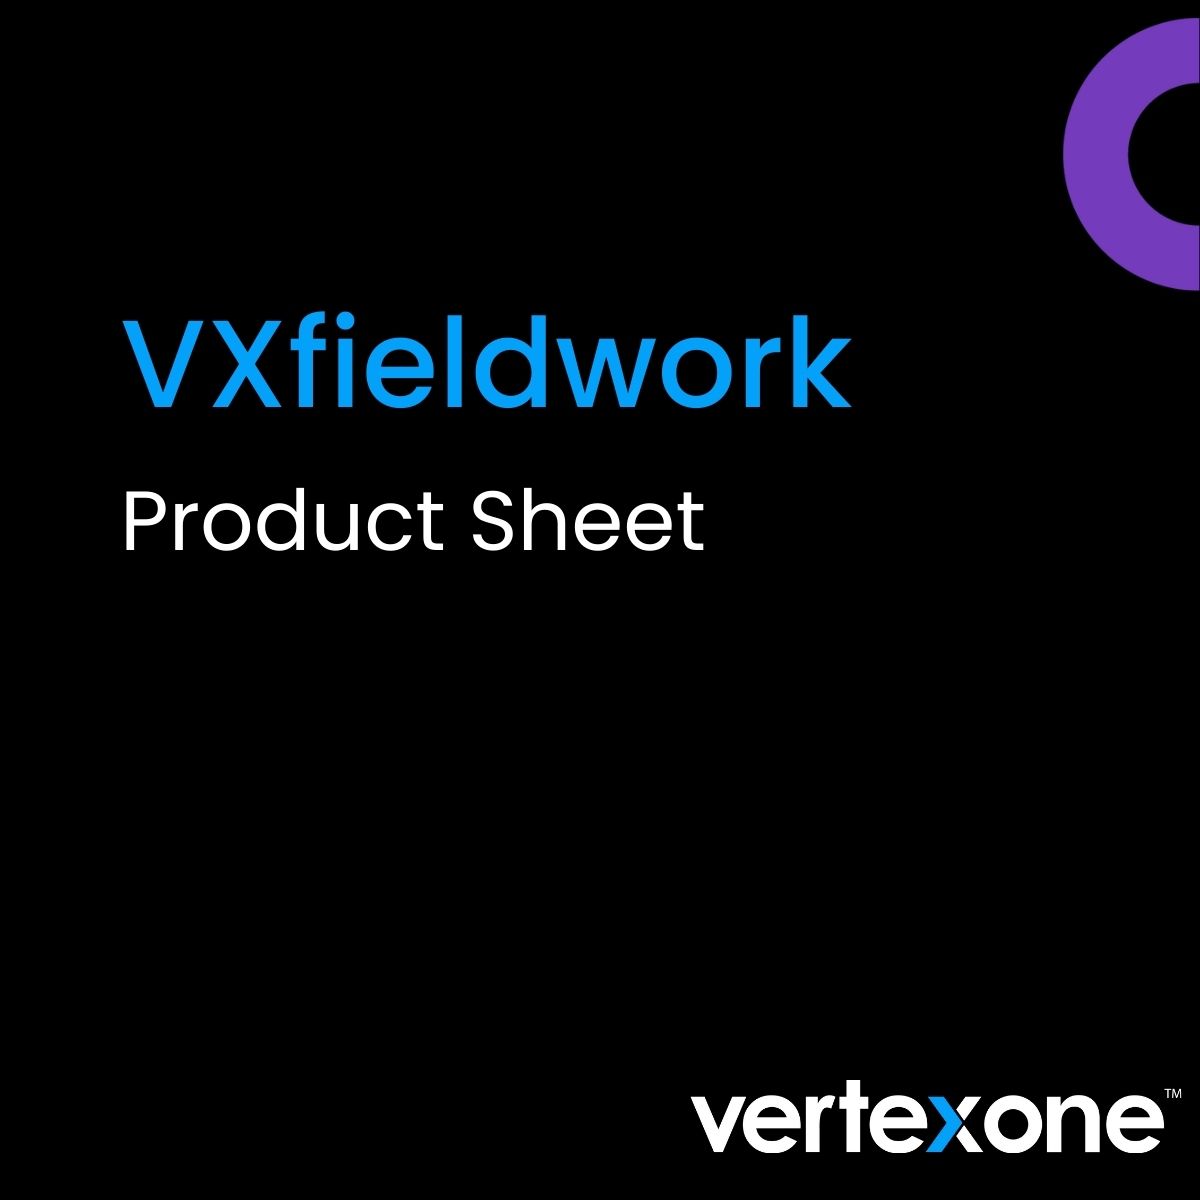 VXfieldwork Product Sheet